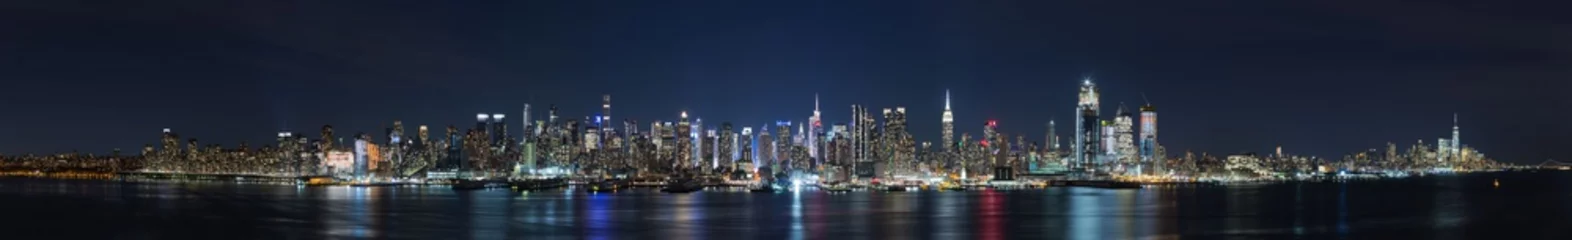 Fototapeten Panoramablick auf die Nacht in Manhattan, Stadtansichten von New York, USA © Sen